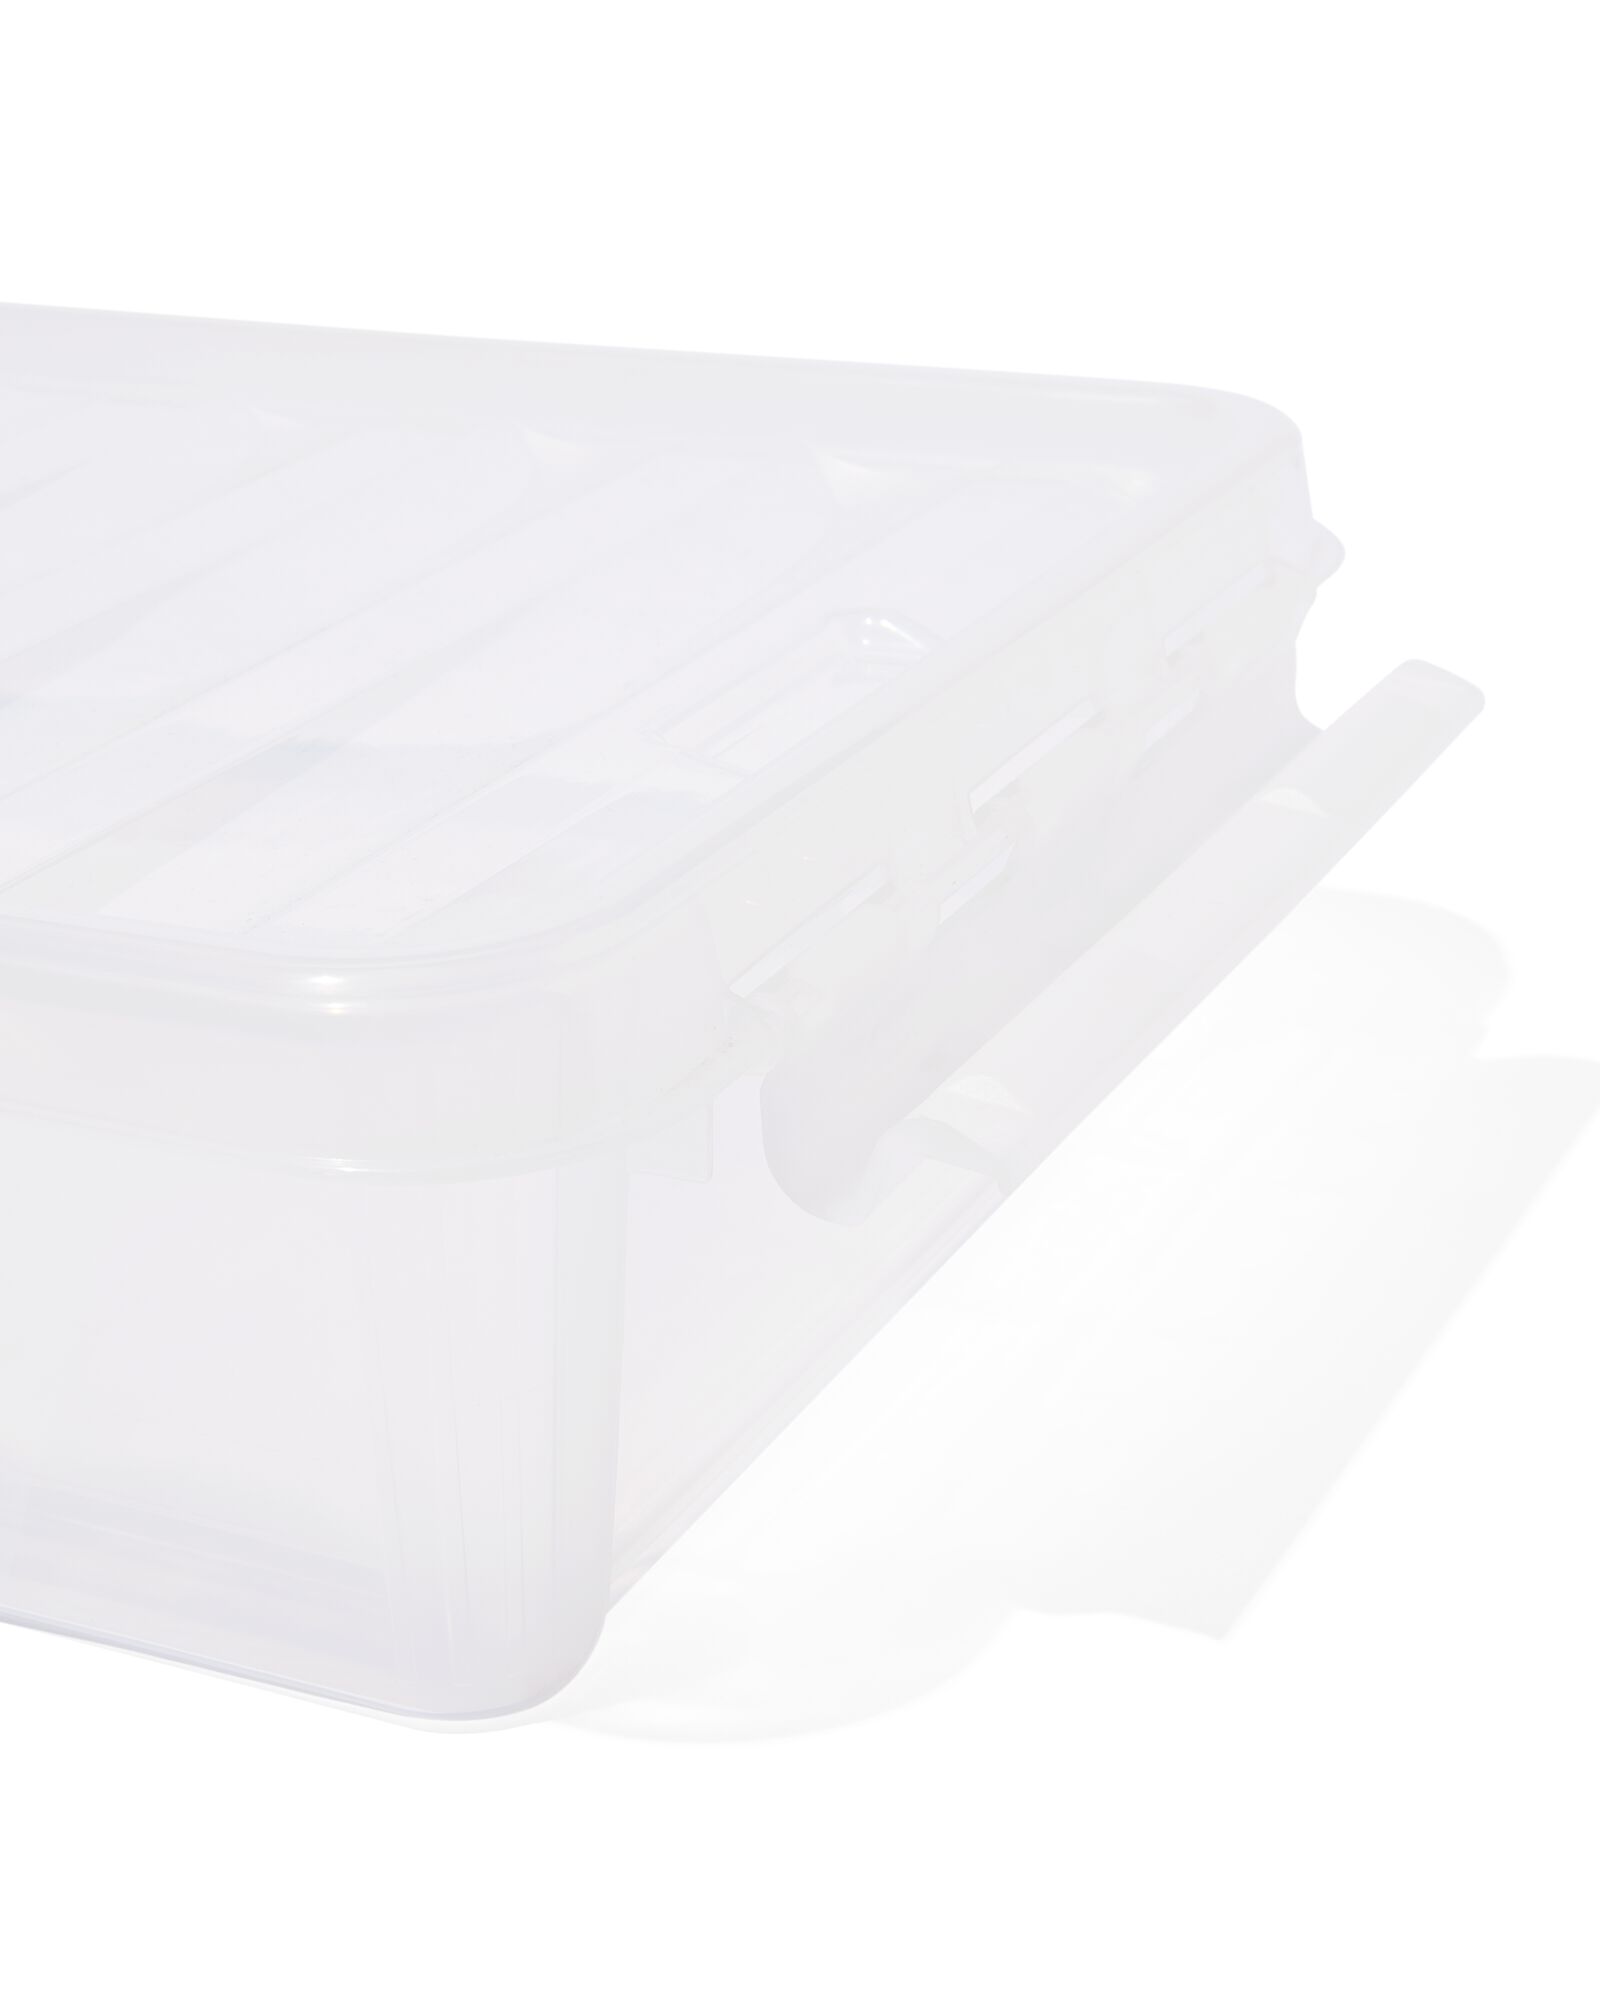 Mittelkonsolen-Organizer-Tablett, Aufbewahrungsbox für die Hintere Mitte,  Großes Fassungsvermögen, Schwarz, Ordentliche Aufbewahrung